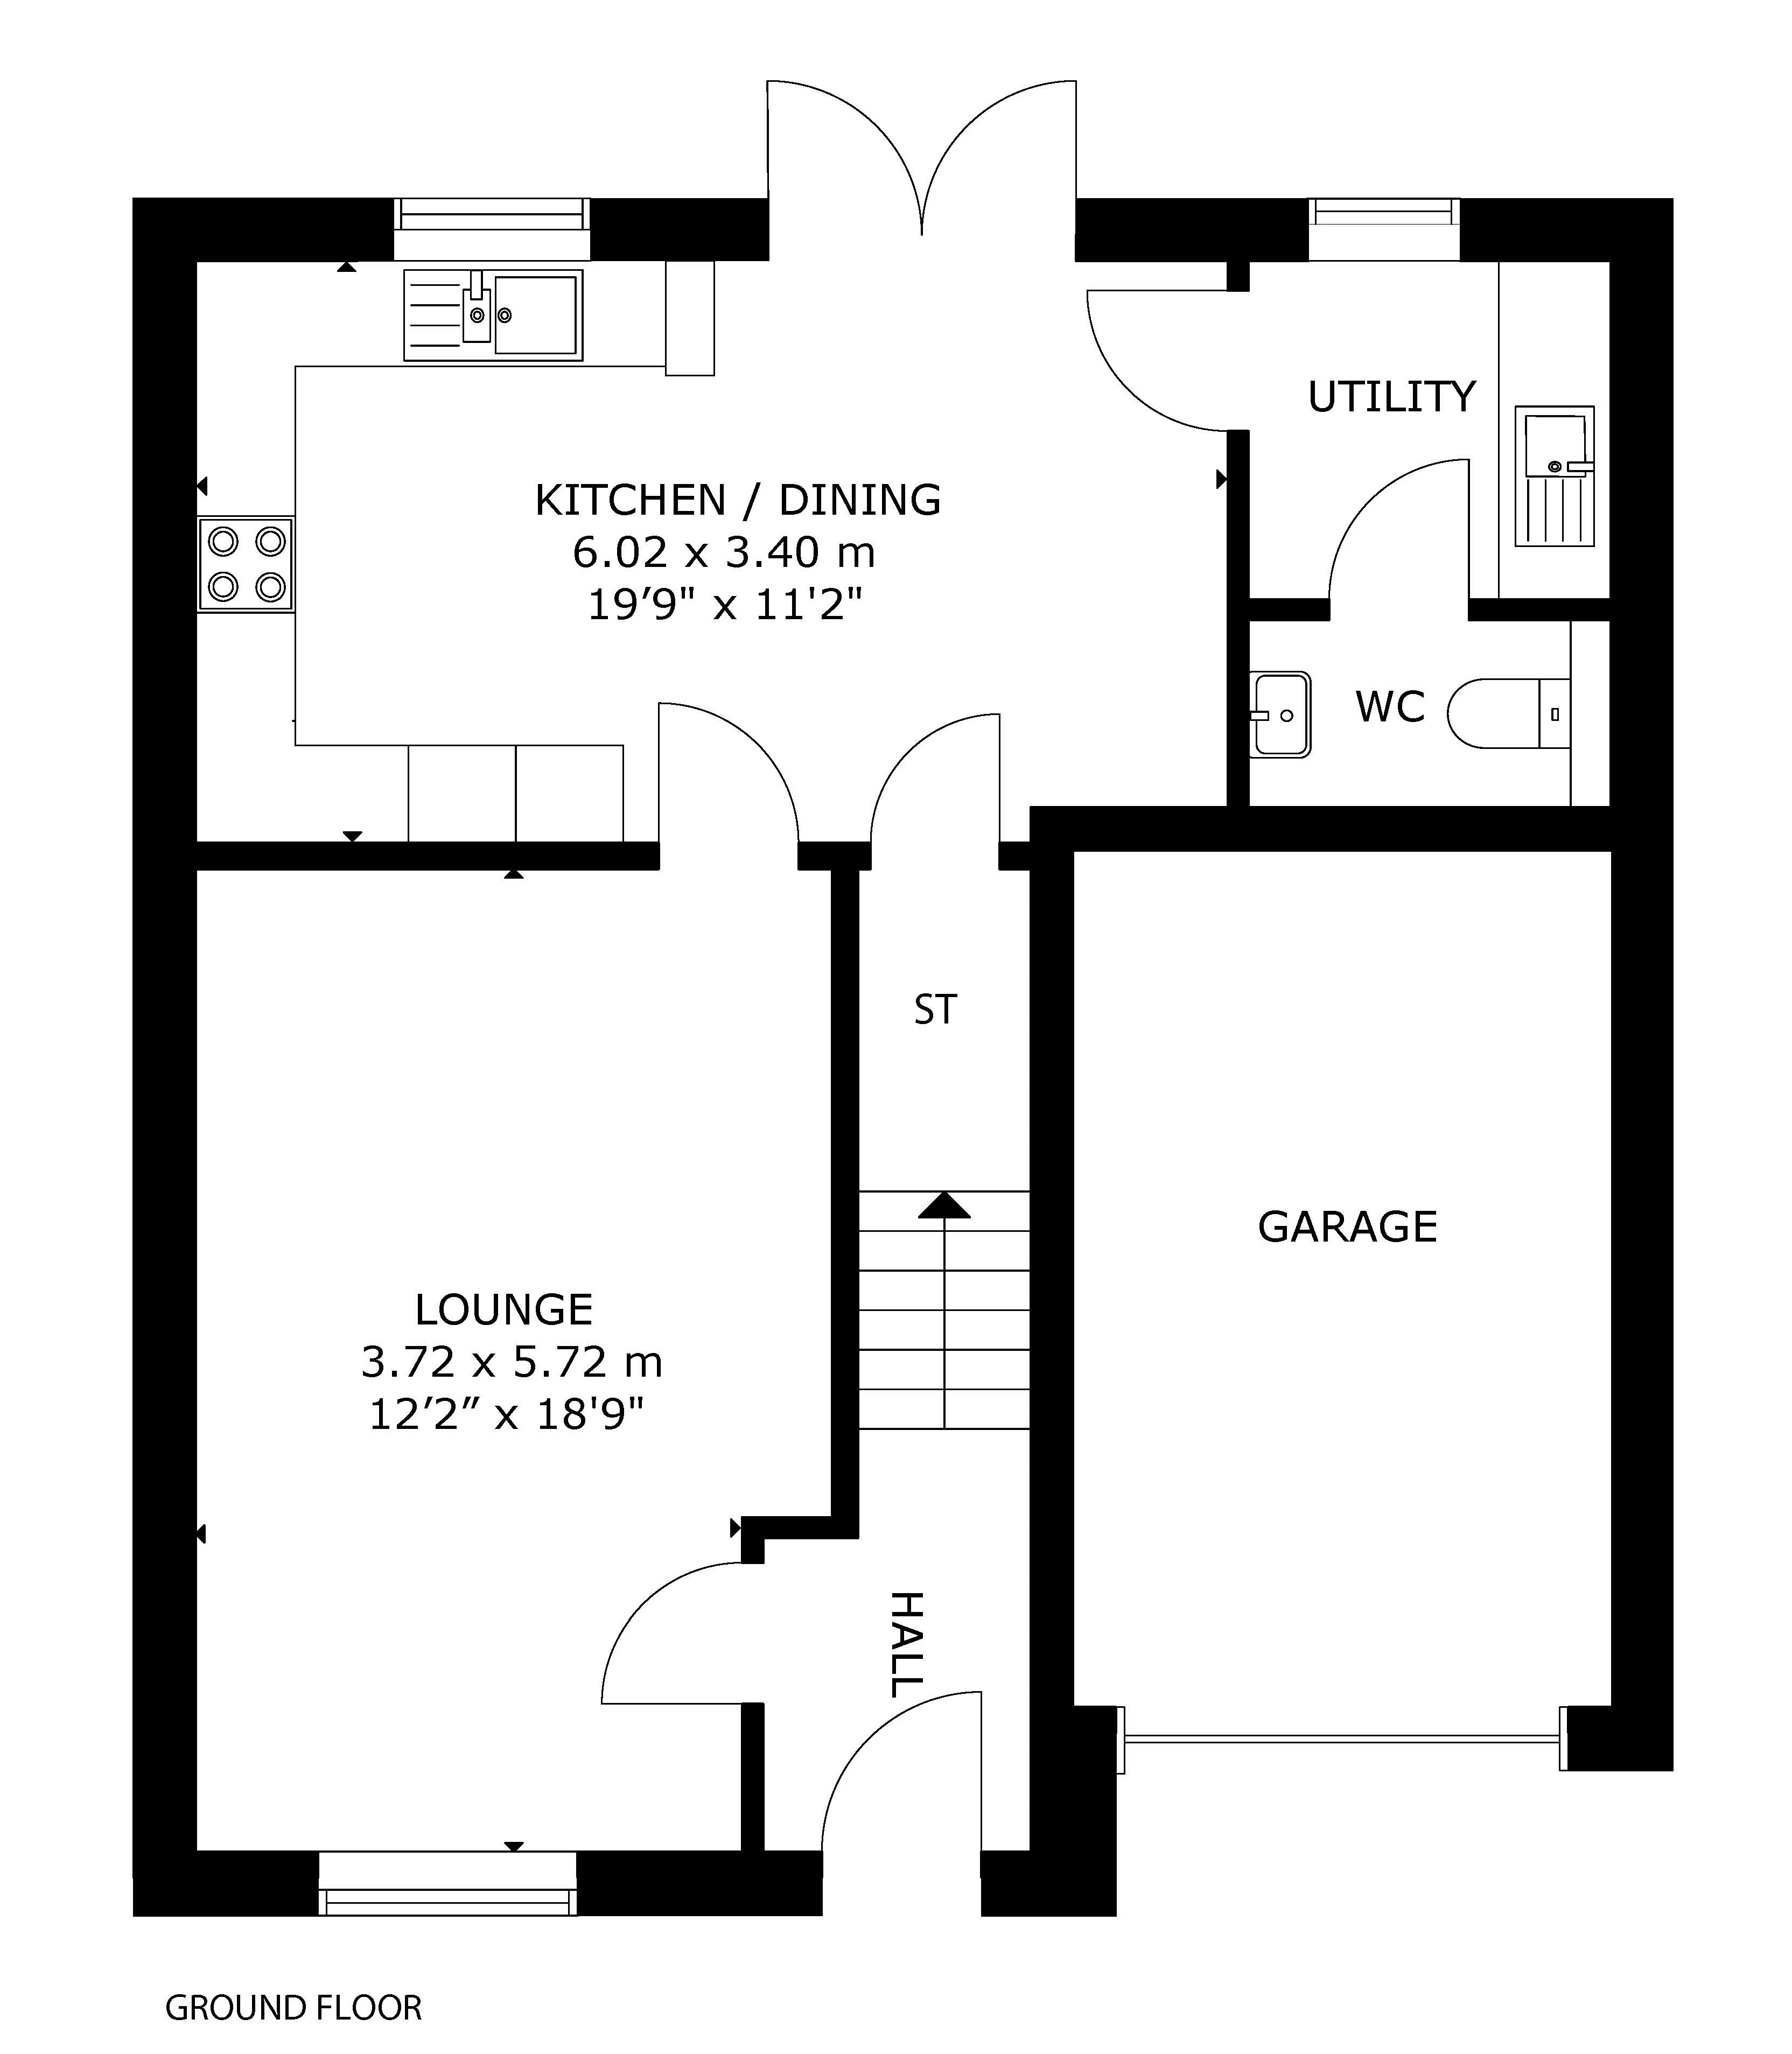 Spey ground floor plan